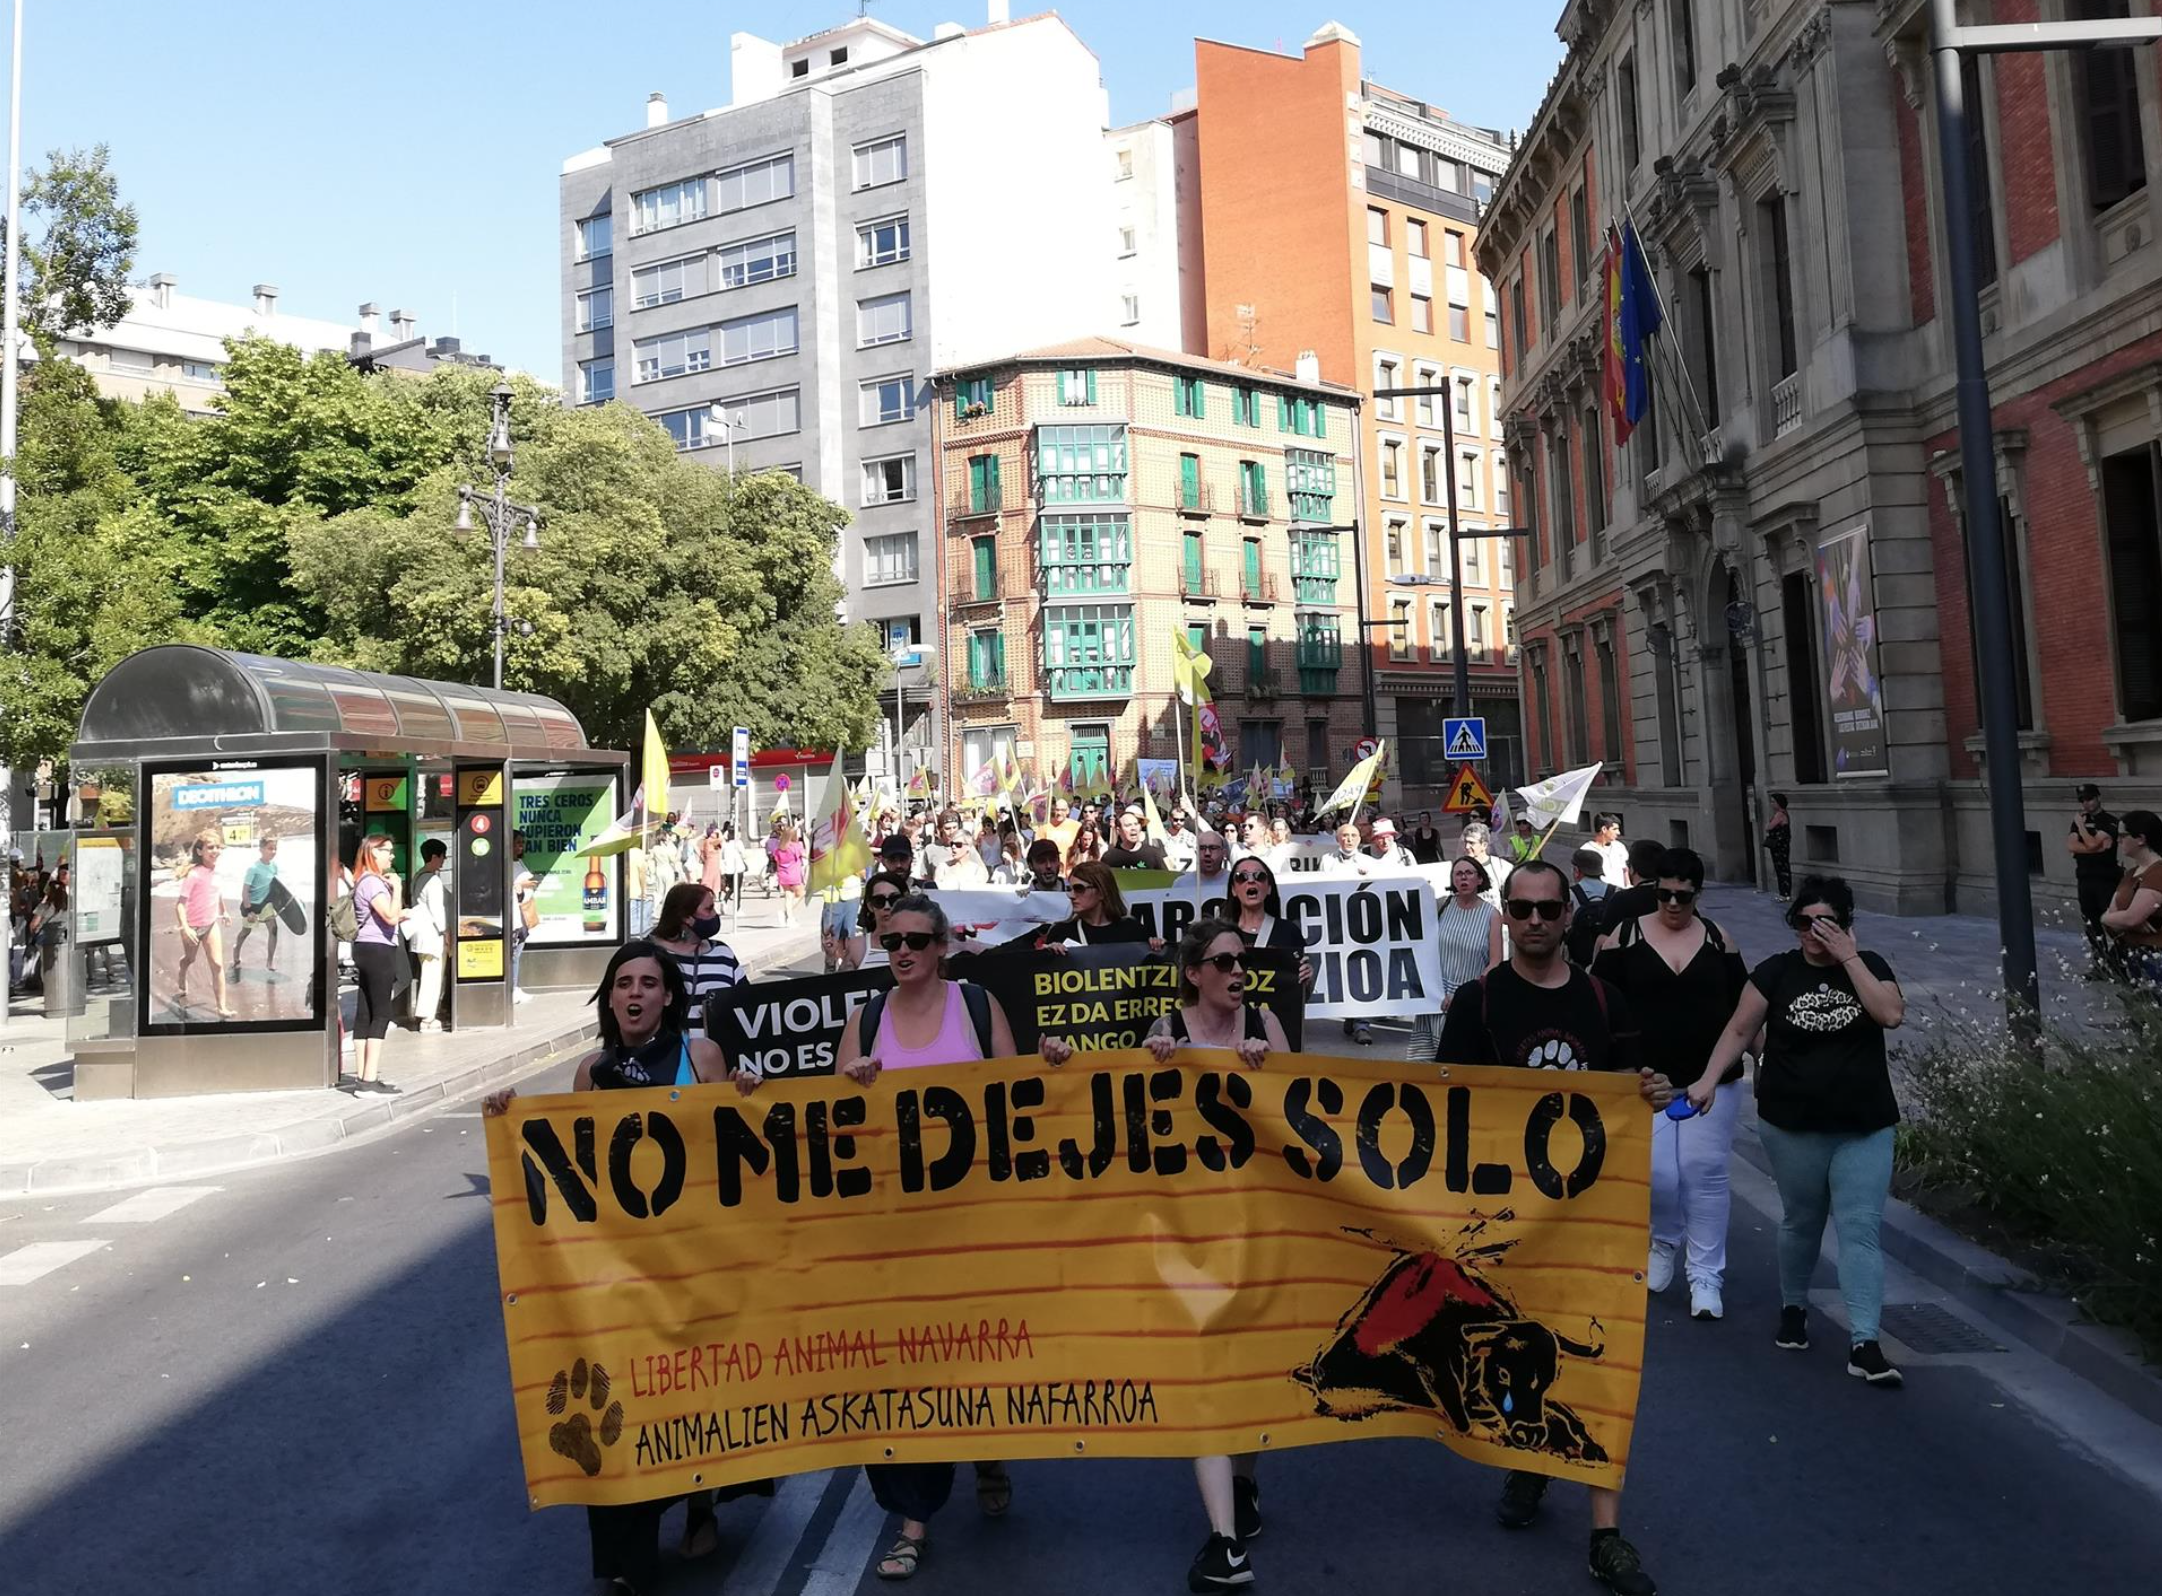 Una manifestación reclama en Pamplona unos Sanfermines "libres de maltrato animal", foto manifestación